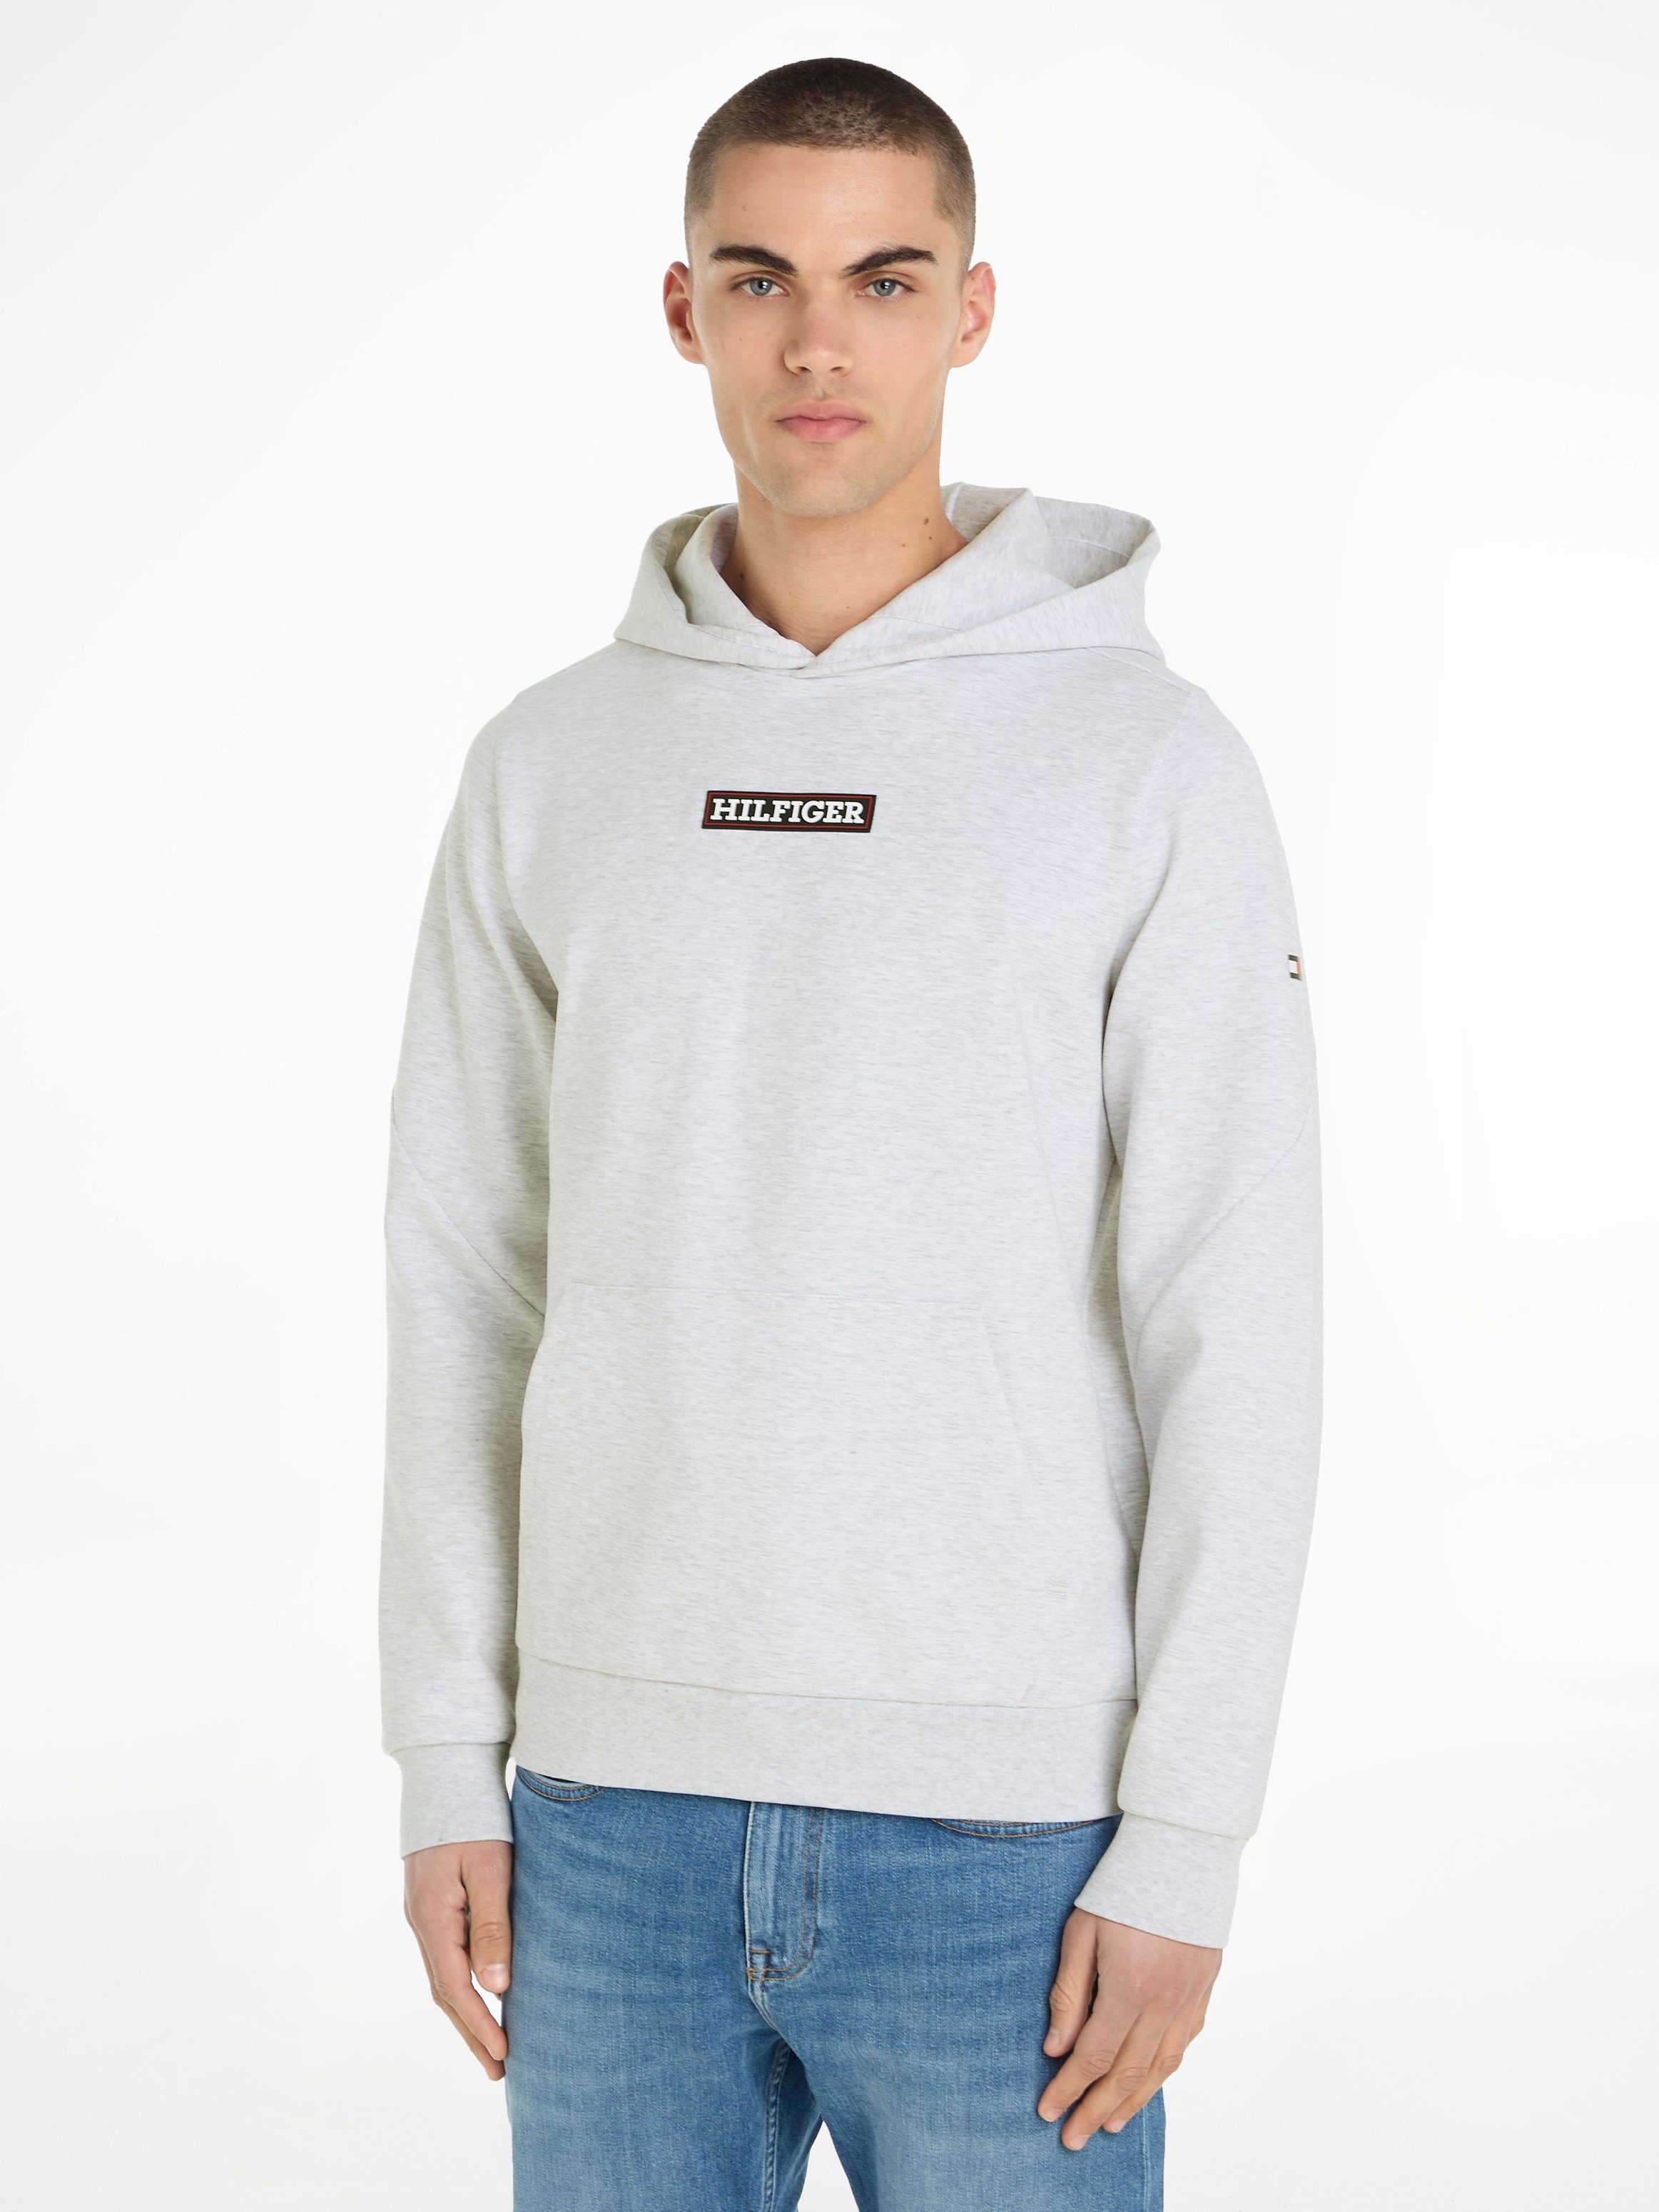 Tommy Hilfiger Herren Sweatshirts online kaufen | OTTO